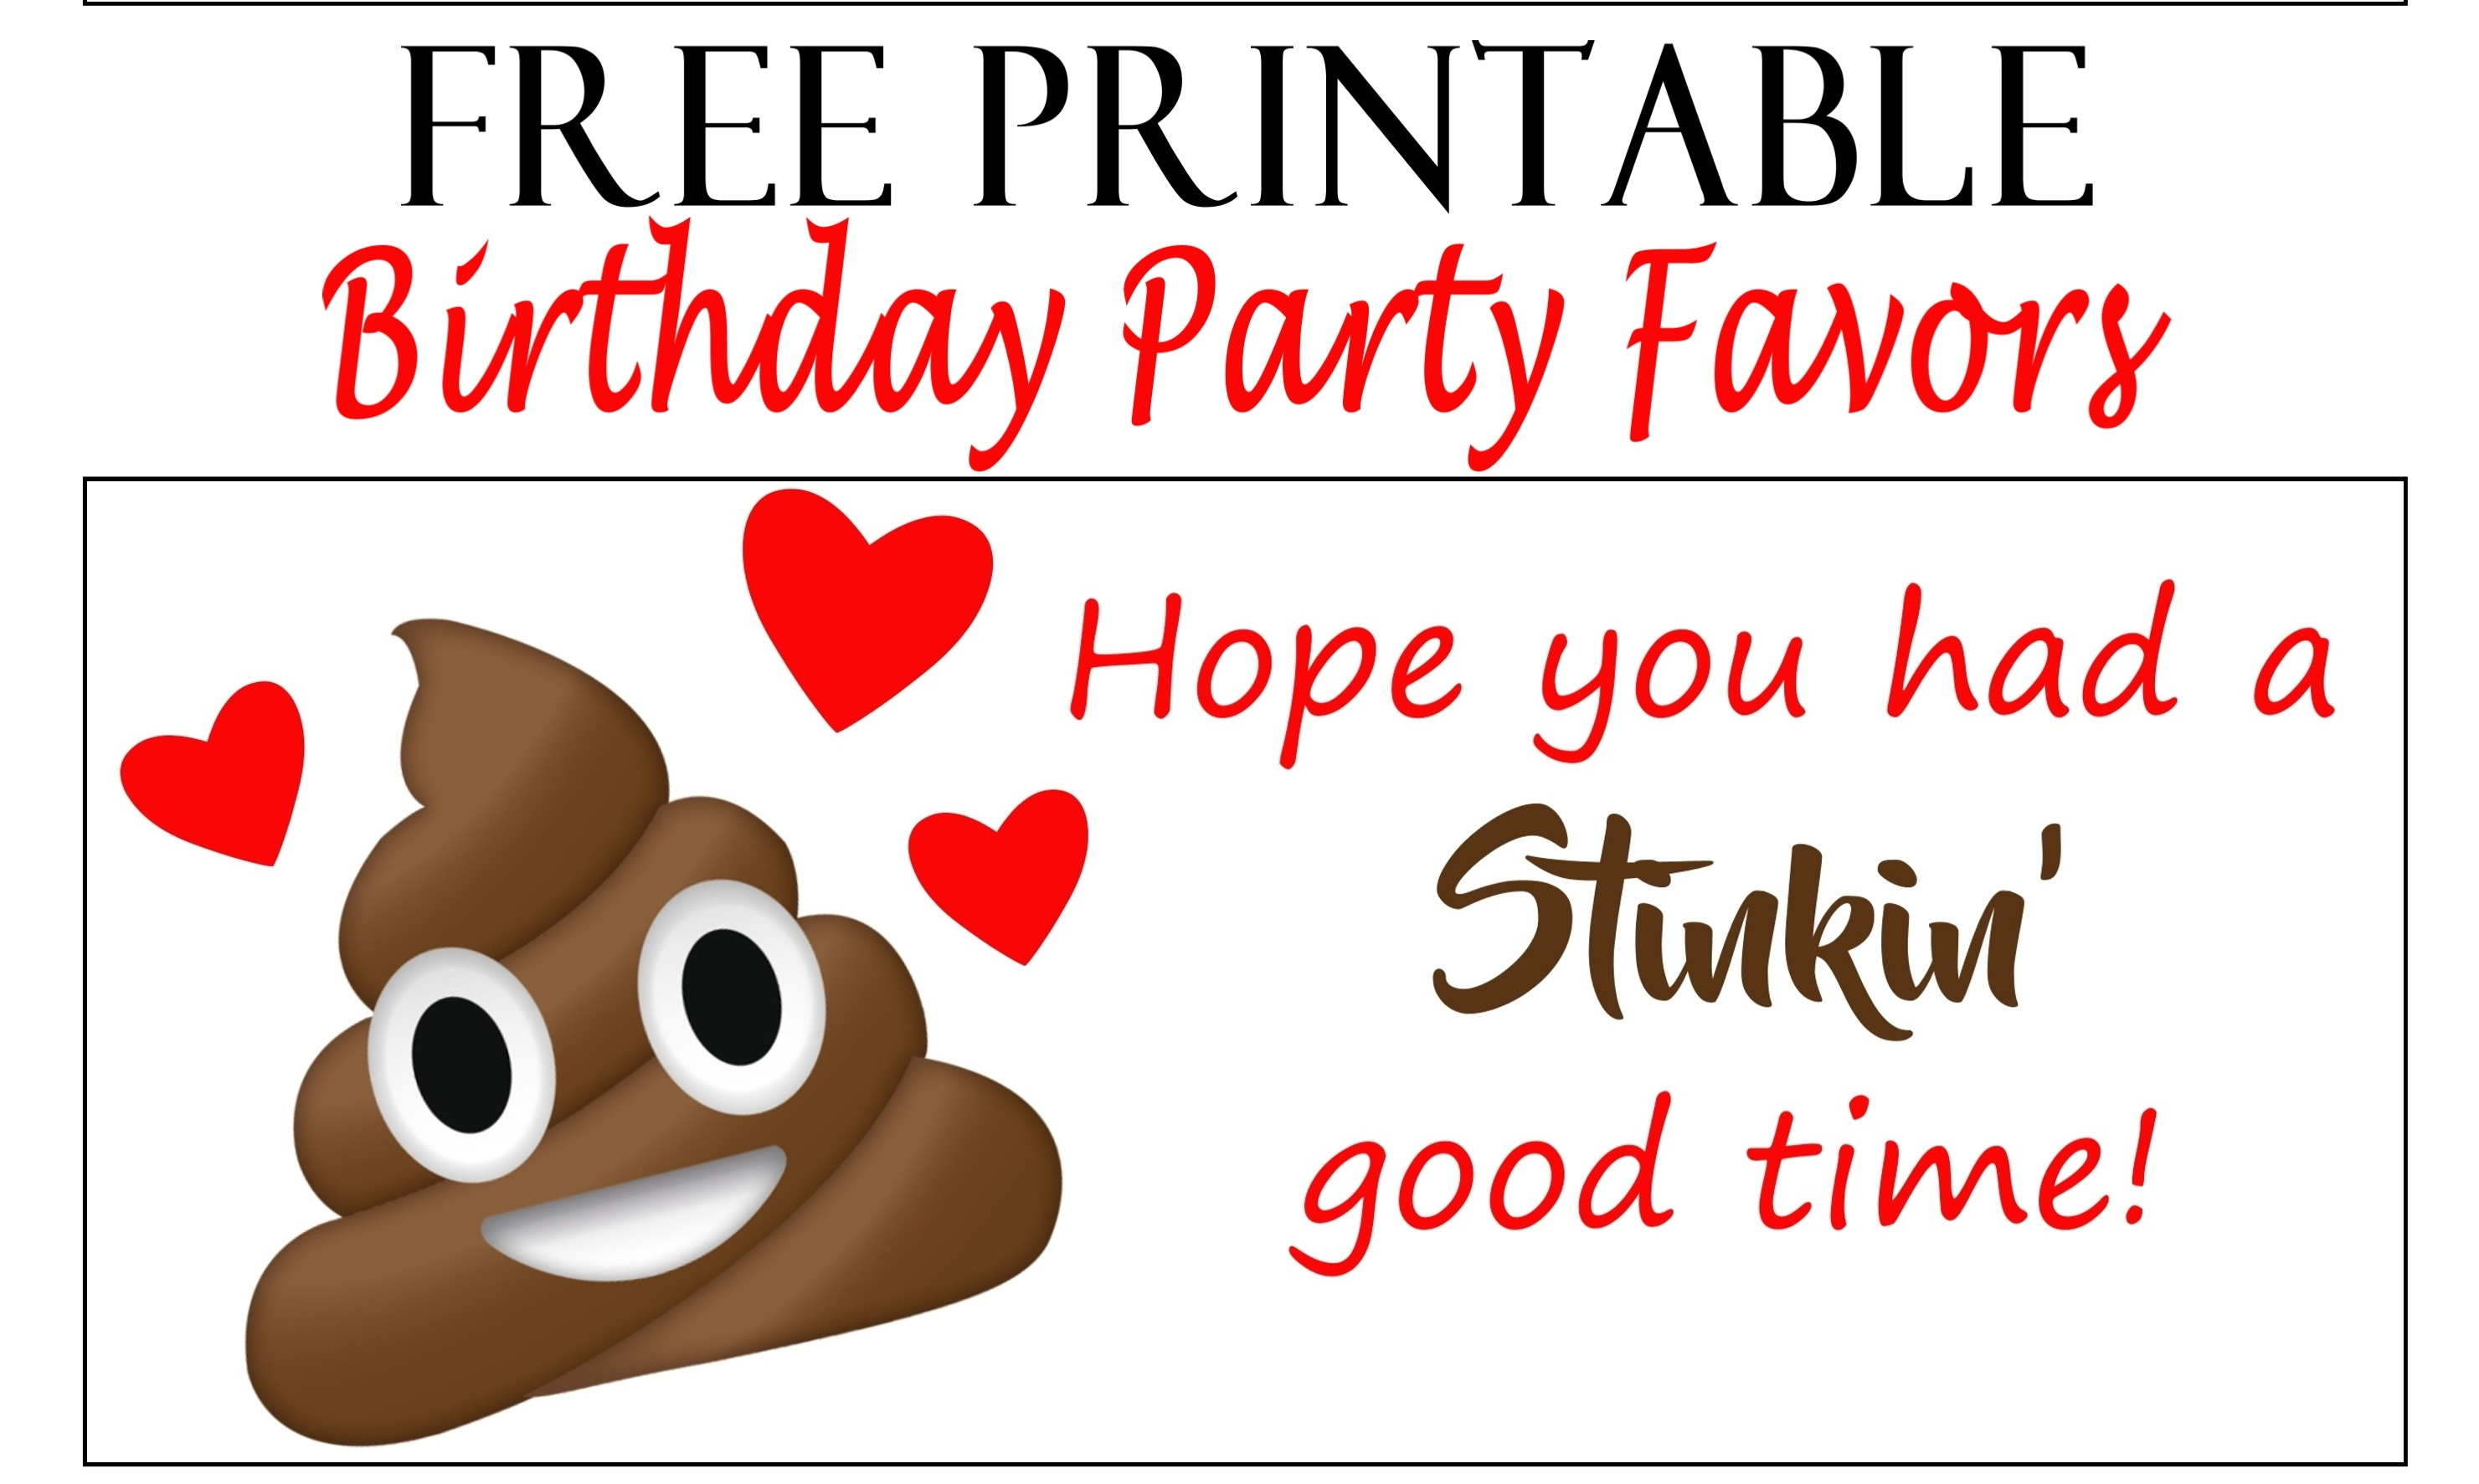 Poop Emoji Birthday Party Tags - Printables 4 Mom - Birthday Party Favor Tags Printable Free